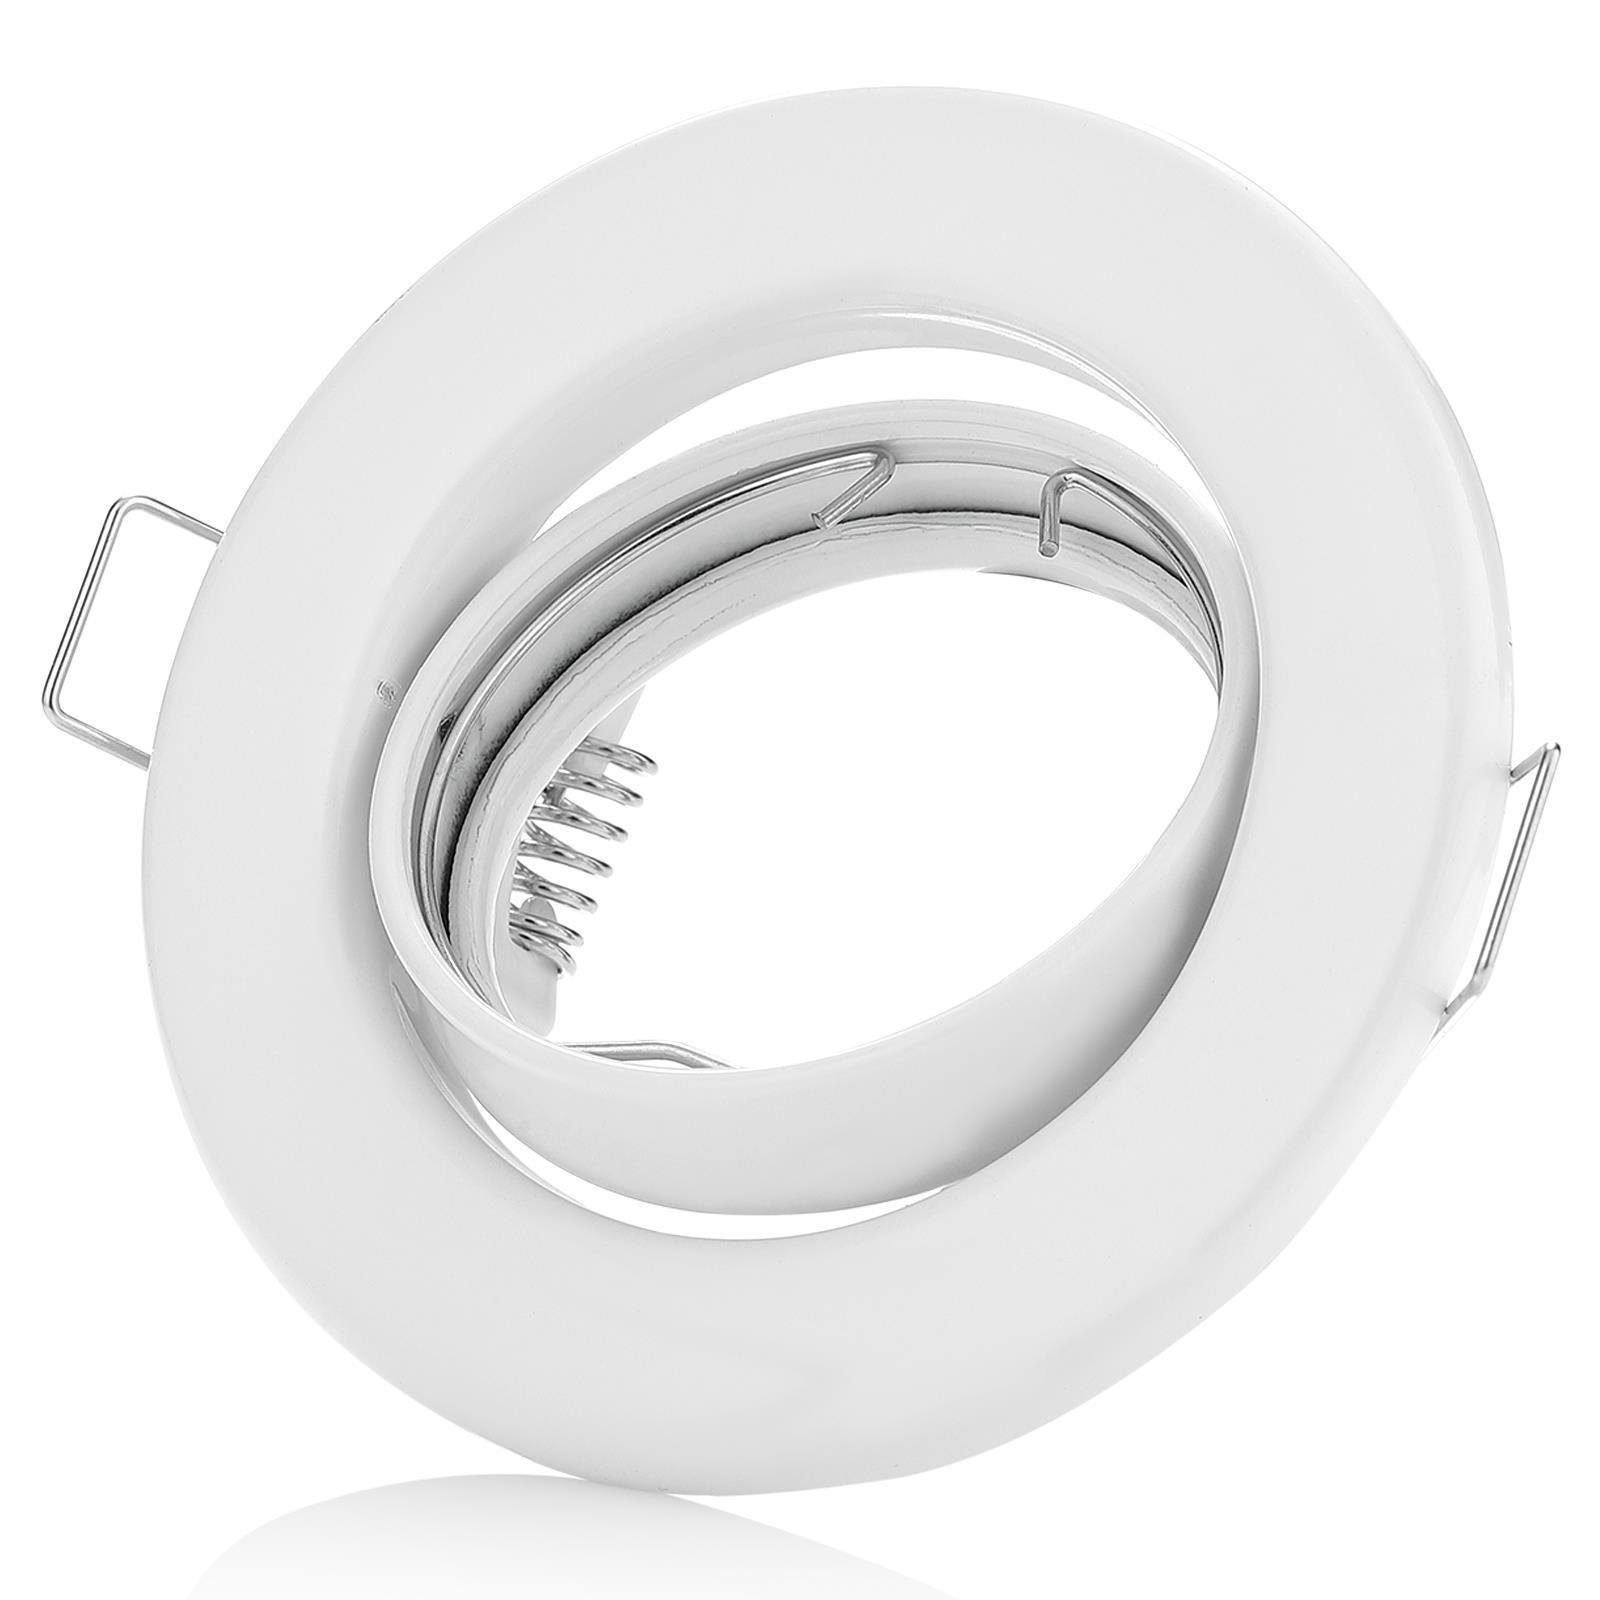 Sweet LED Deckenspot spot weiß matt GU10 schwenkbar 230V, Einbauspots, Deckenspots, Einbaustrahler